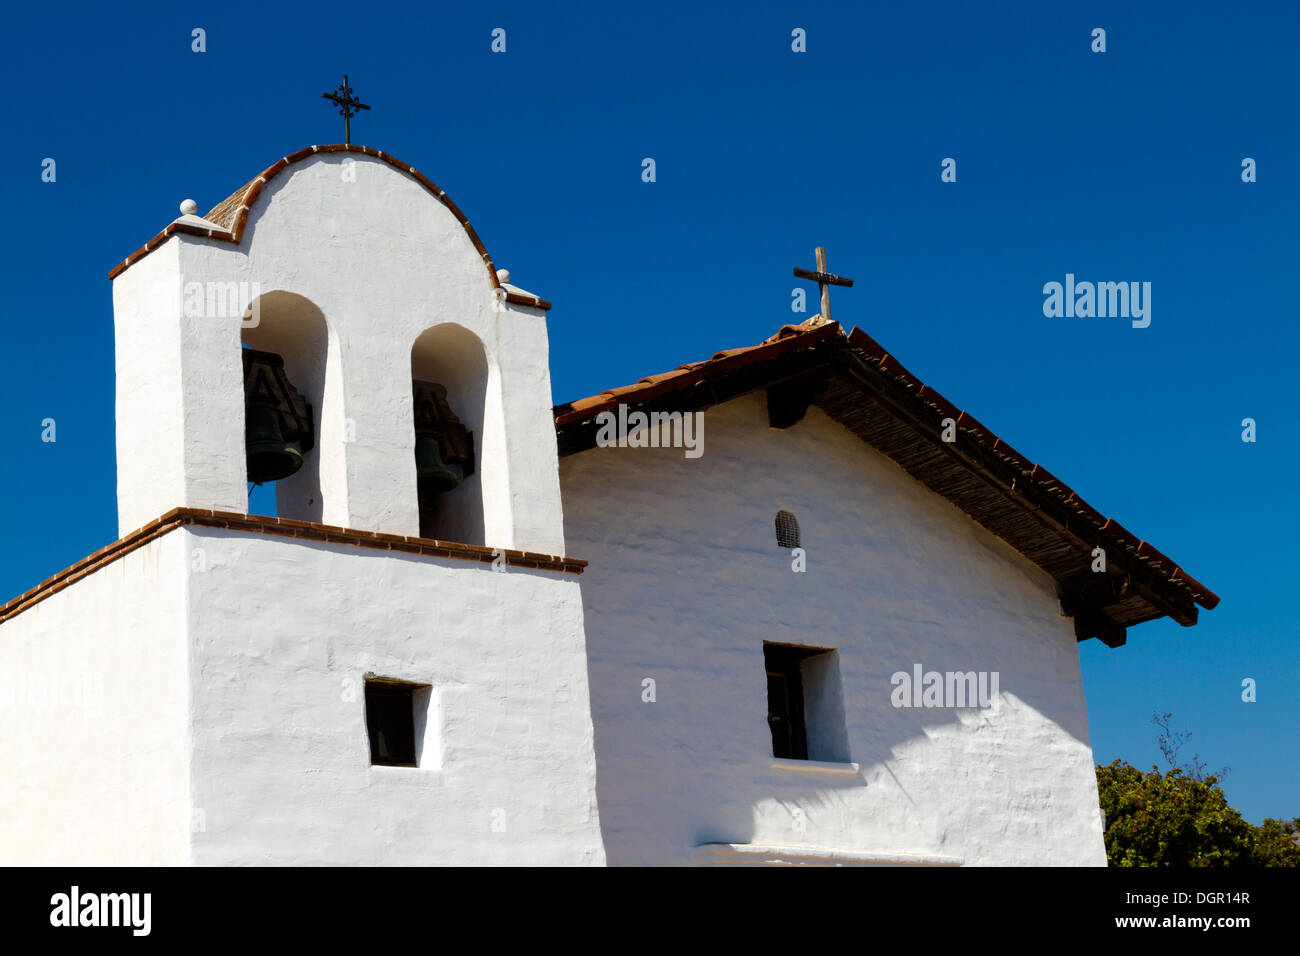 La chapelle restaurée dans le presidio Santa Barbara montrant le clocher. Banque D'Images